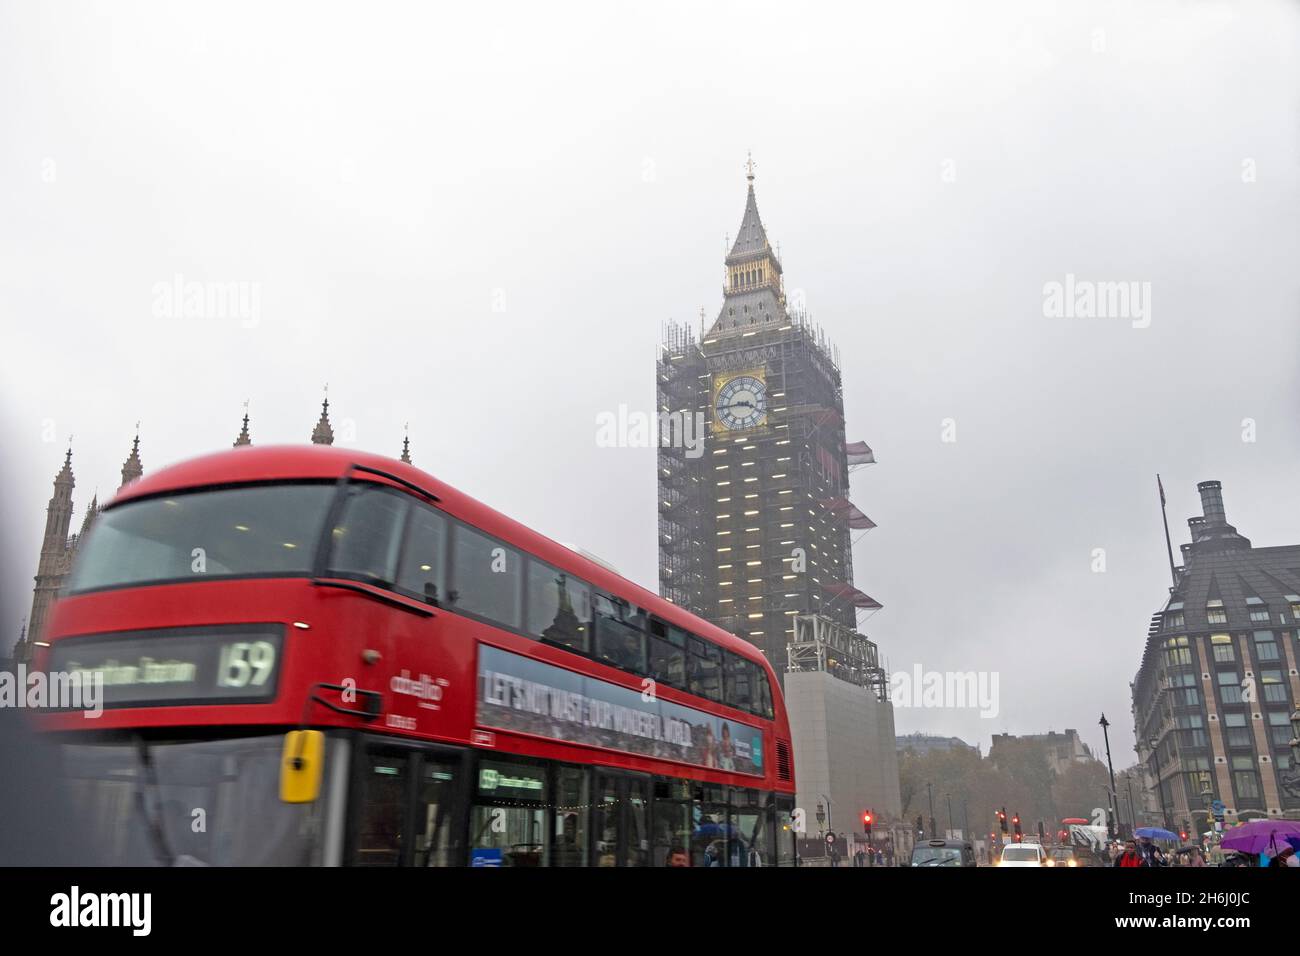 Tour de l'horloge Big Ben et échafaudage en cours de rénovation et bus à impériale à Westminster Londres Angleterre Royaume-Uni Grande-Bretagne novembre 2021 KATHY DEWITT Banque D'Images